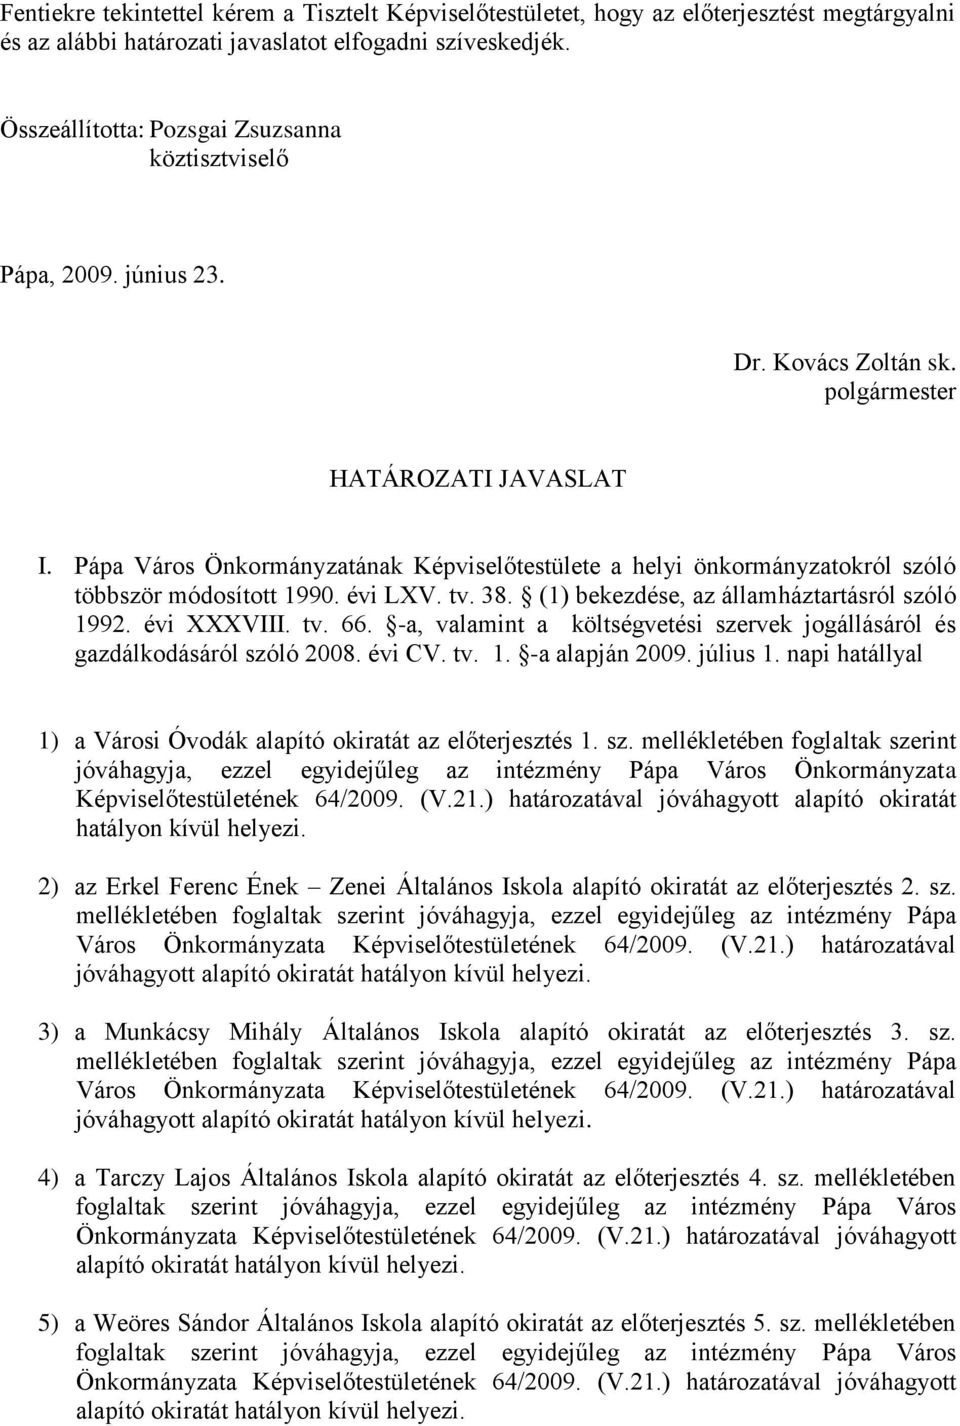 Pápa Város Önkormányzatának Képviselőtestülete a helyi önkormányzatokról szóló többször módosított 1990. évi LXV. tv. 38. (1) bekezdése, az államháztartásról szóló 1992. évi XXXVIII. tv. 66.